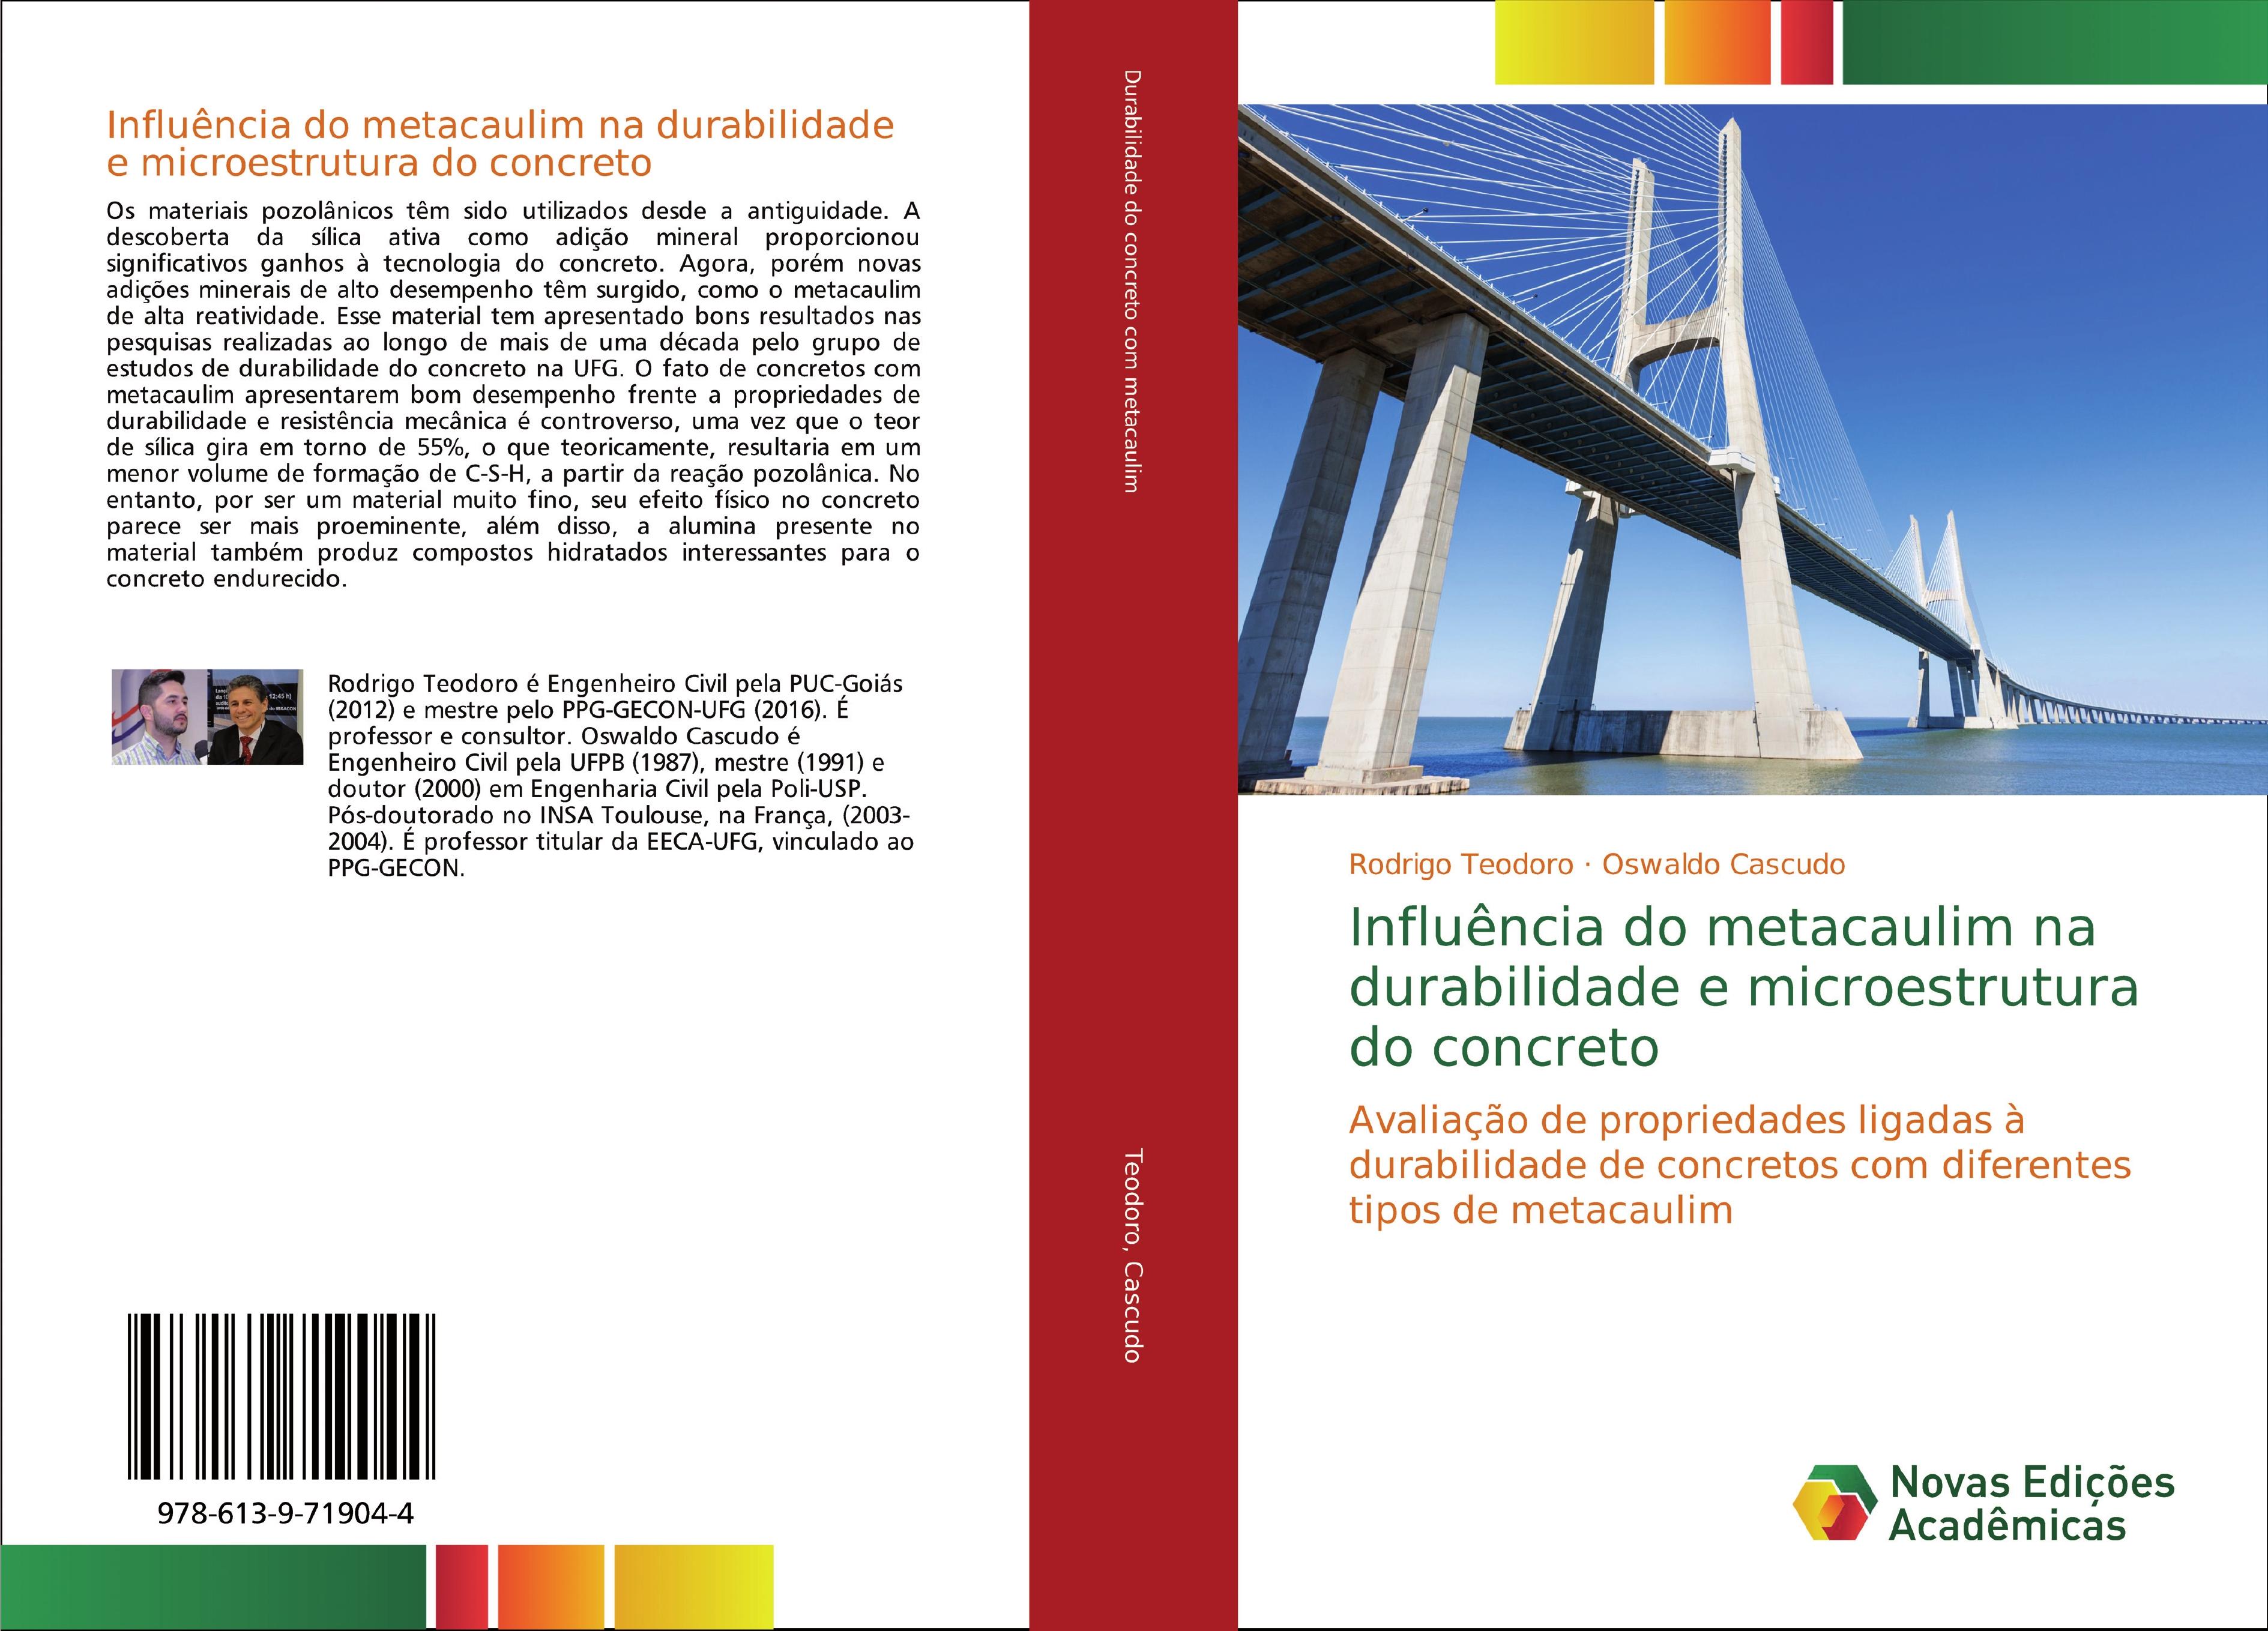 InfluÃªncia do metacaulim na durabilidade e microestrutura do concreto - Rodrigo Teodoro|Oswaldo Cascudo